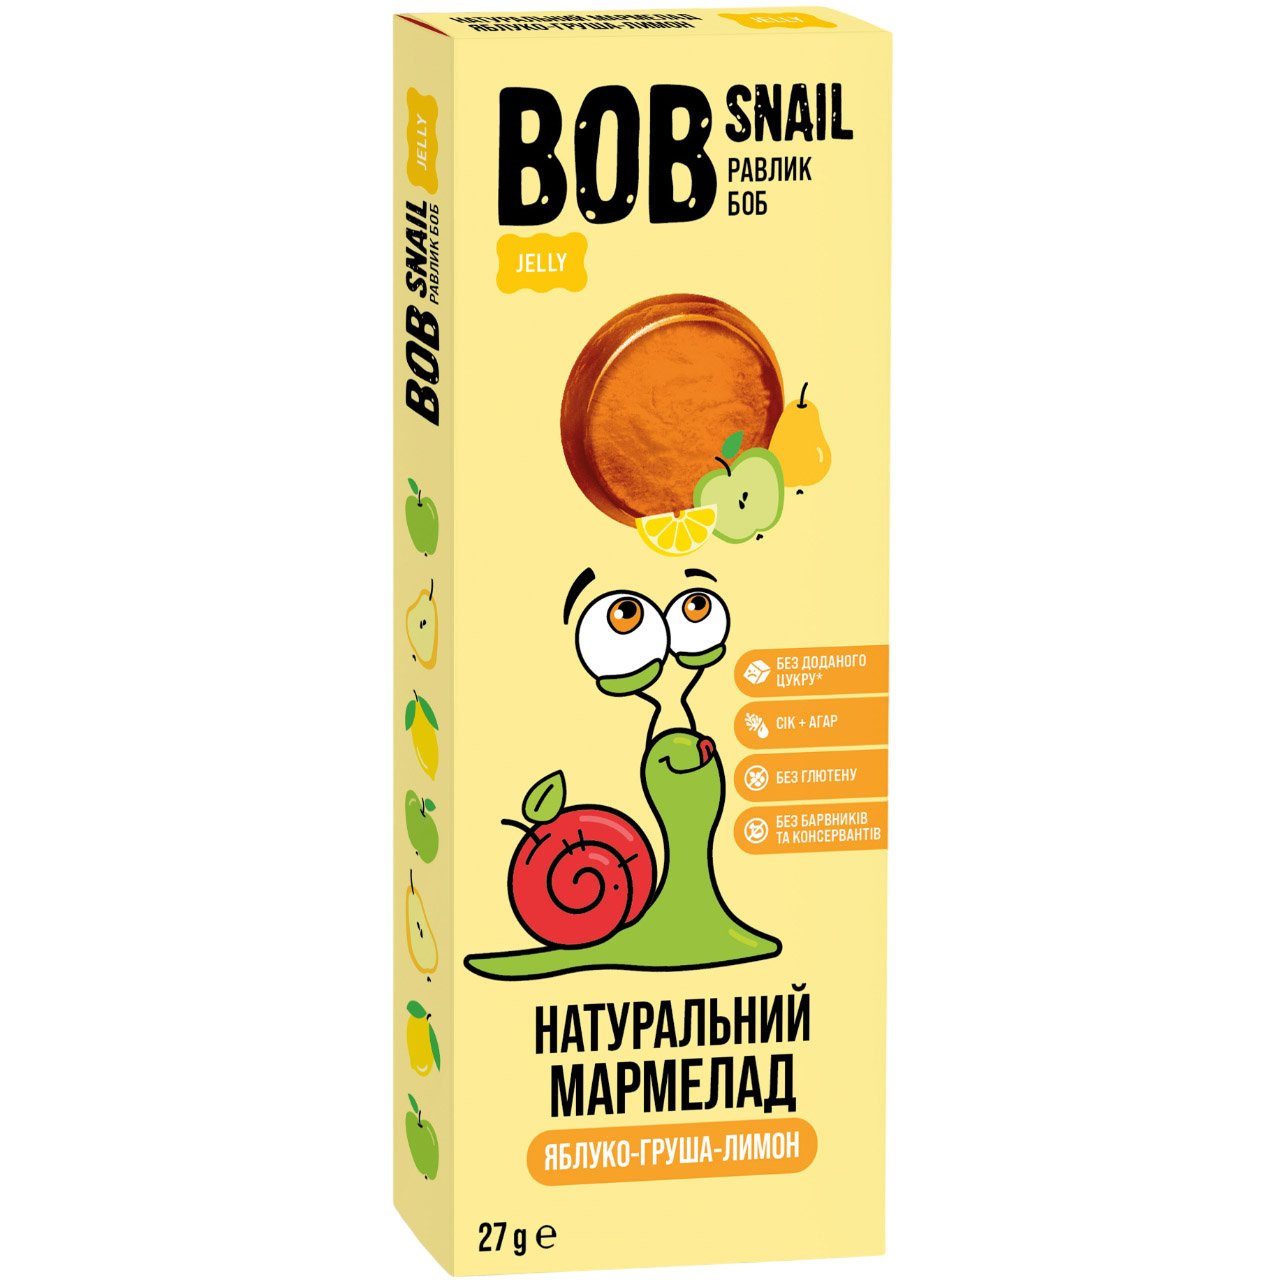 Натуральный мармелад Bob Snail Яблоко-Груша-Лимон 27 г - фото 1